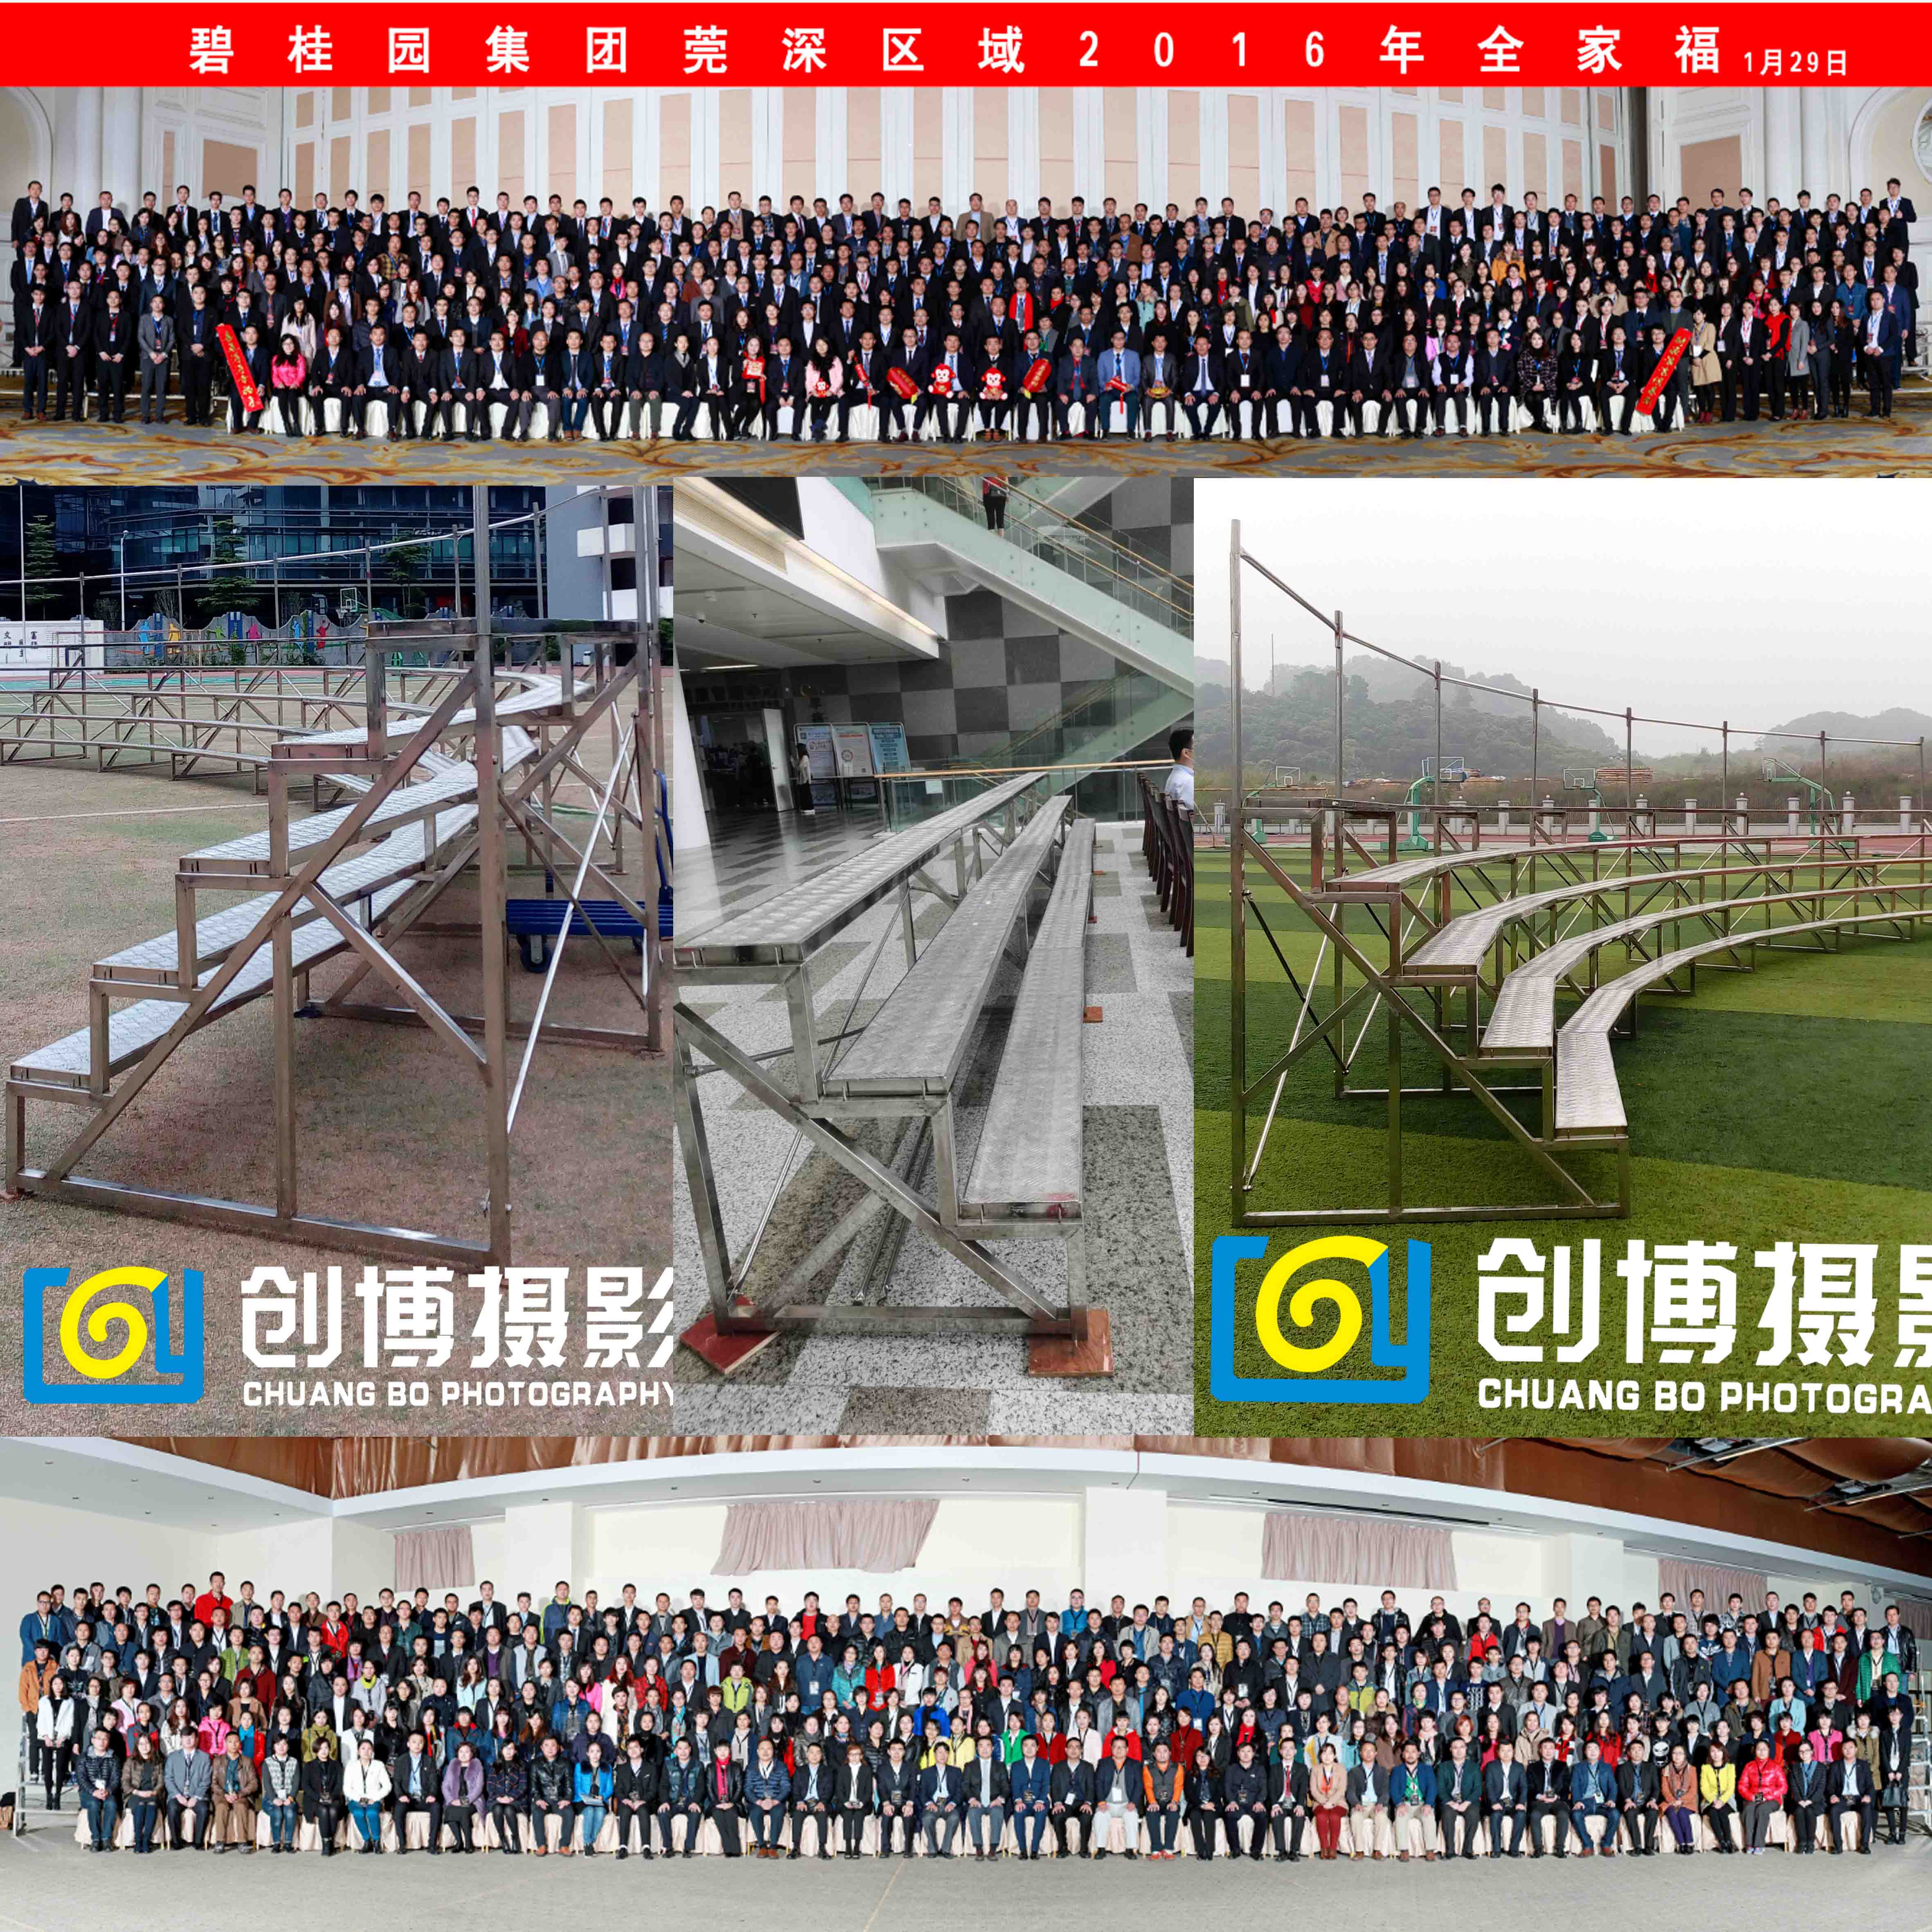 惠州创博专业拍摄大合影会议集体照小金口百人合照拍摄提供合铁架